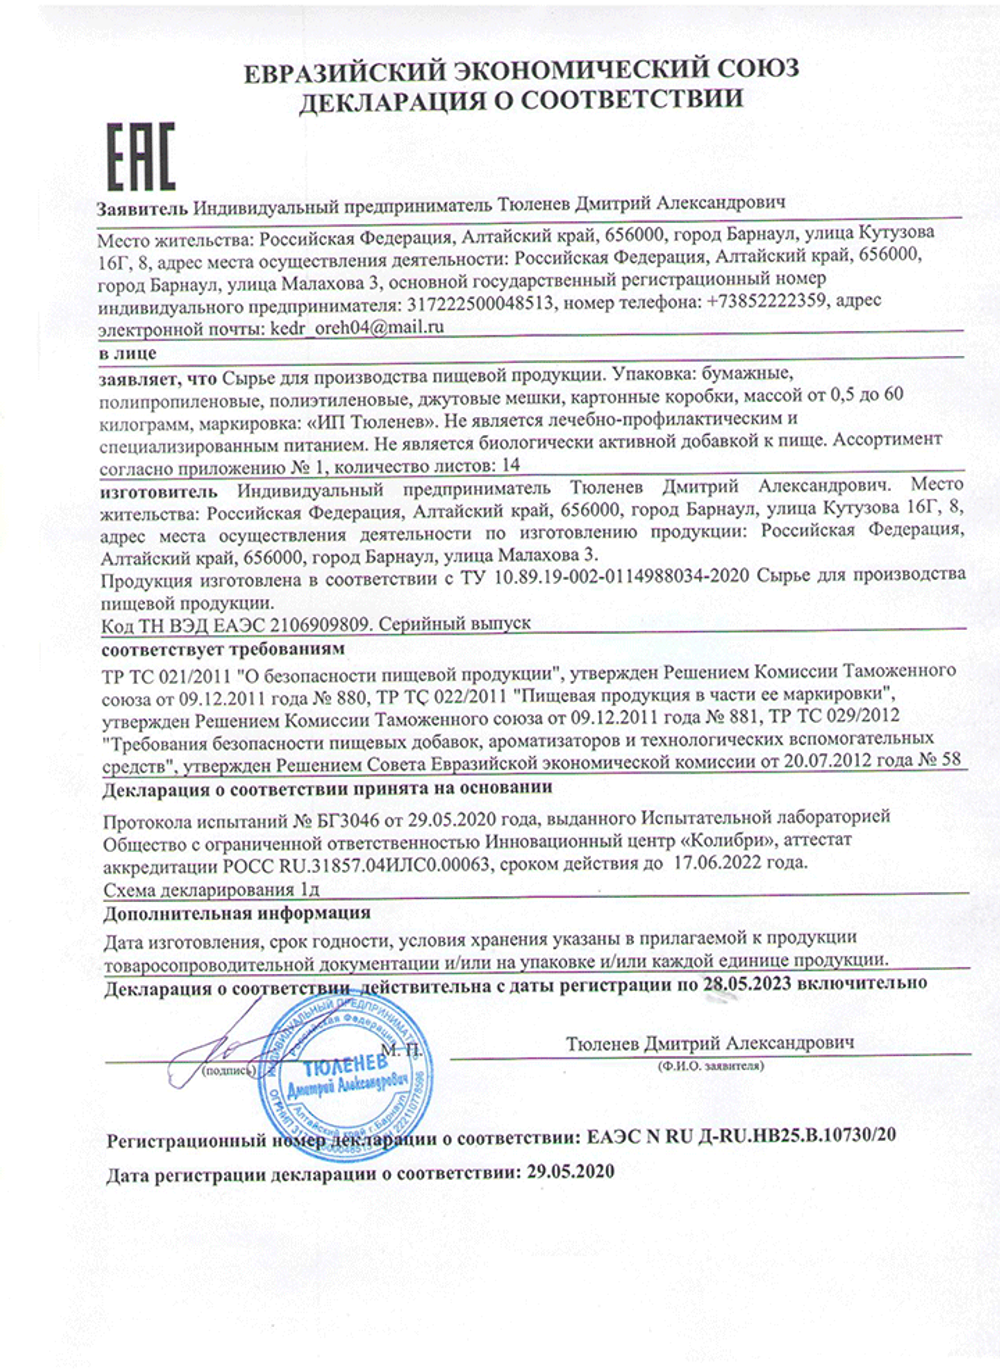 Изображение сертификата соответствия цветов боярышника-adonnis.ru